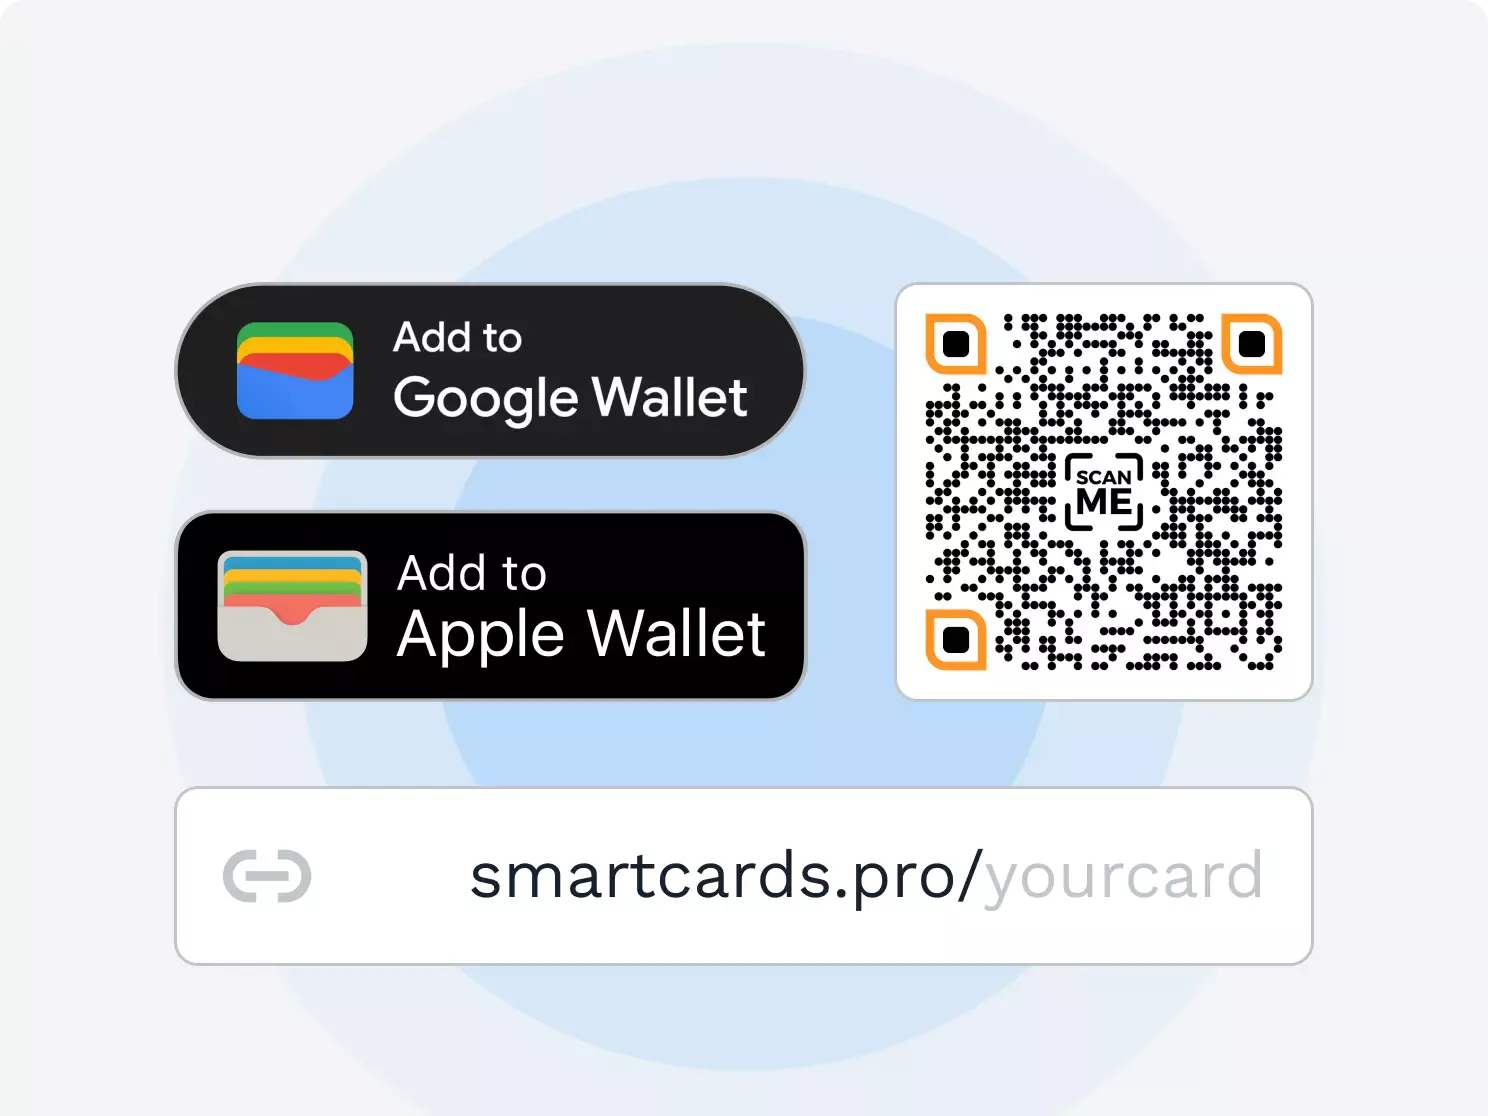 Save digital business cards on Apple Wallet or Google Wallet